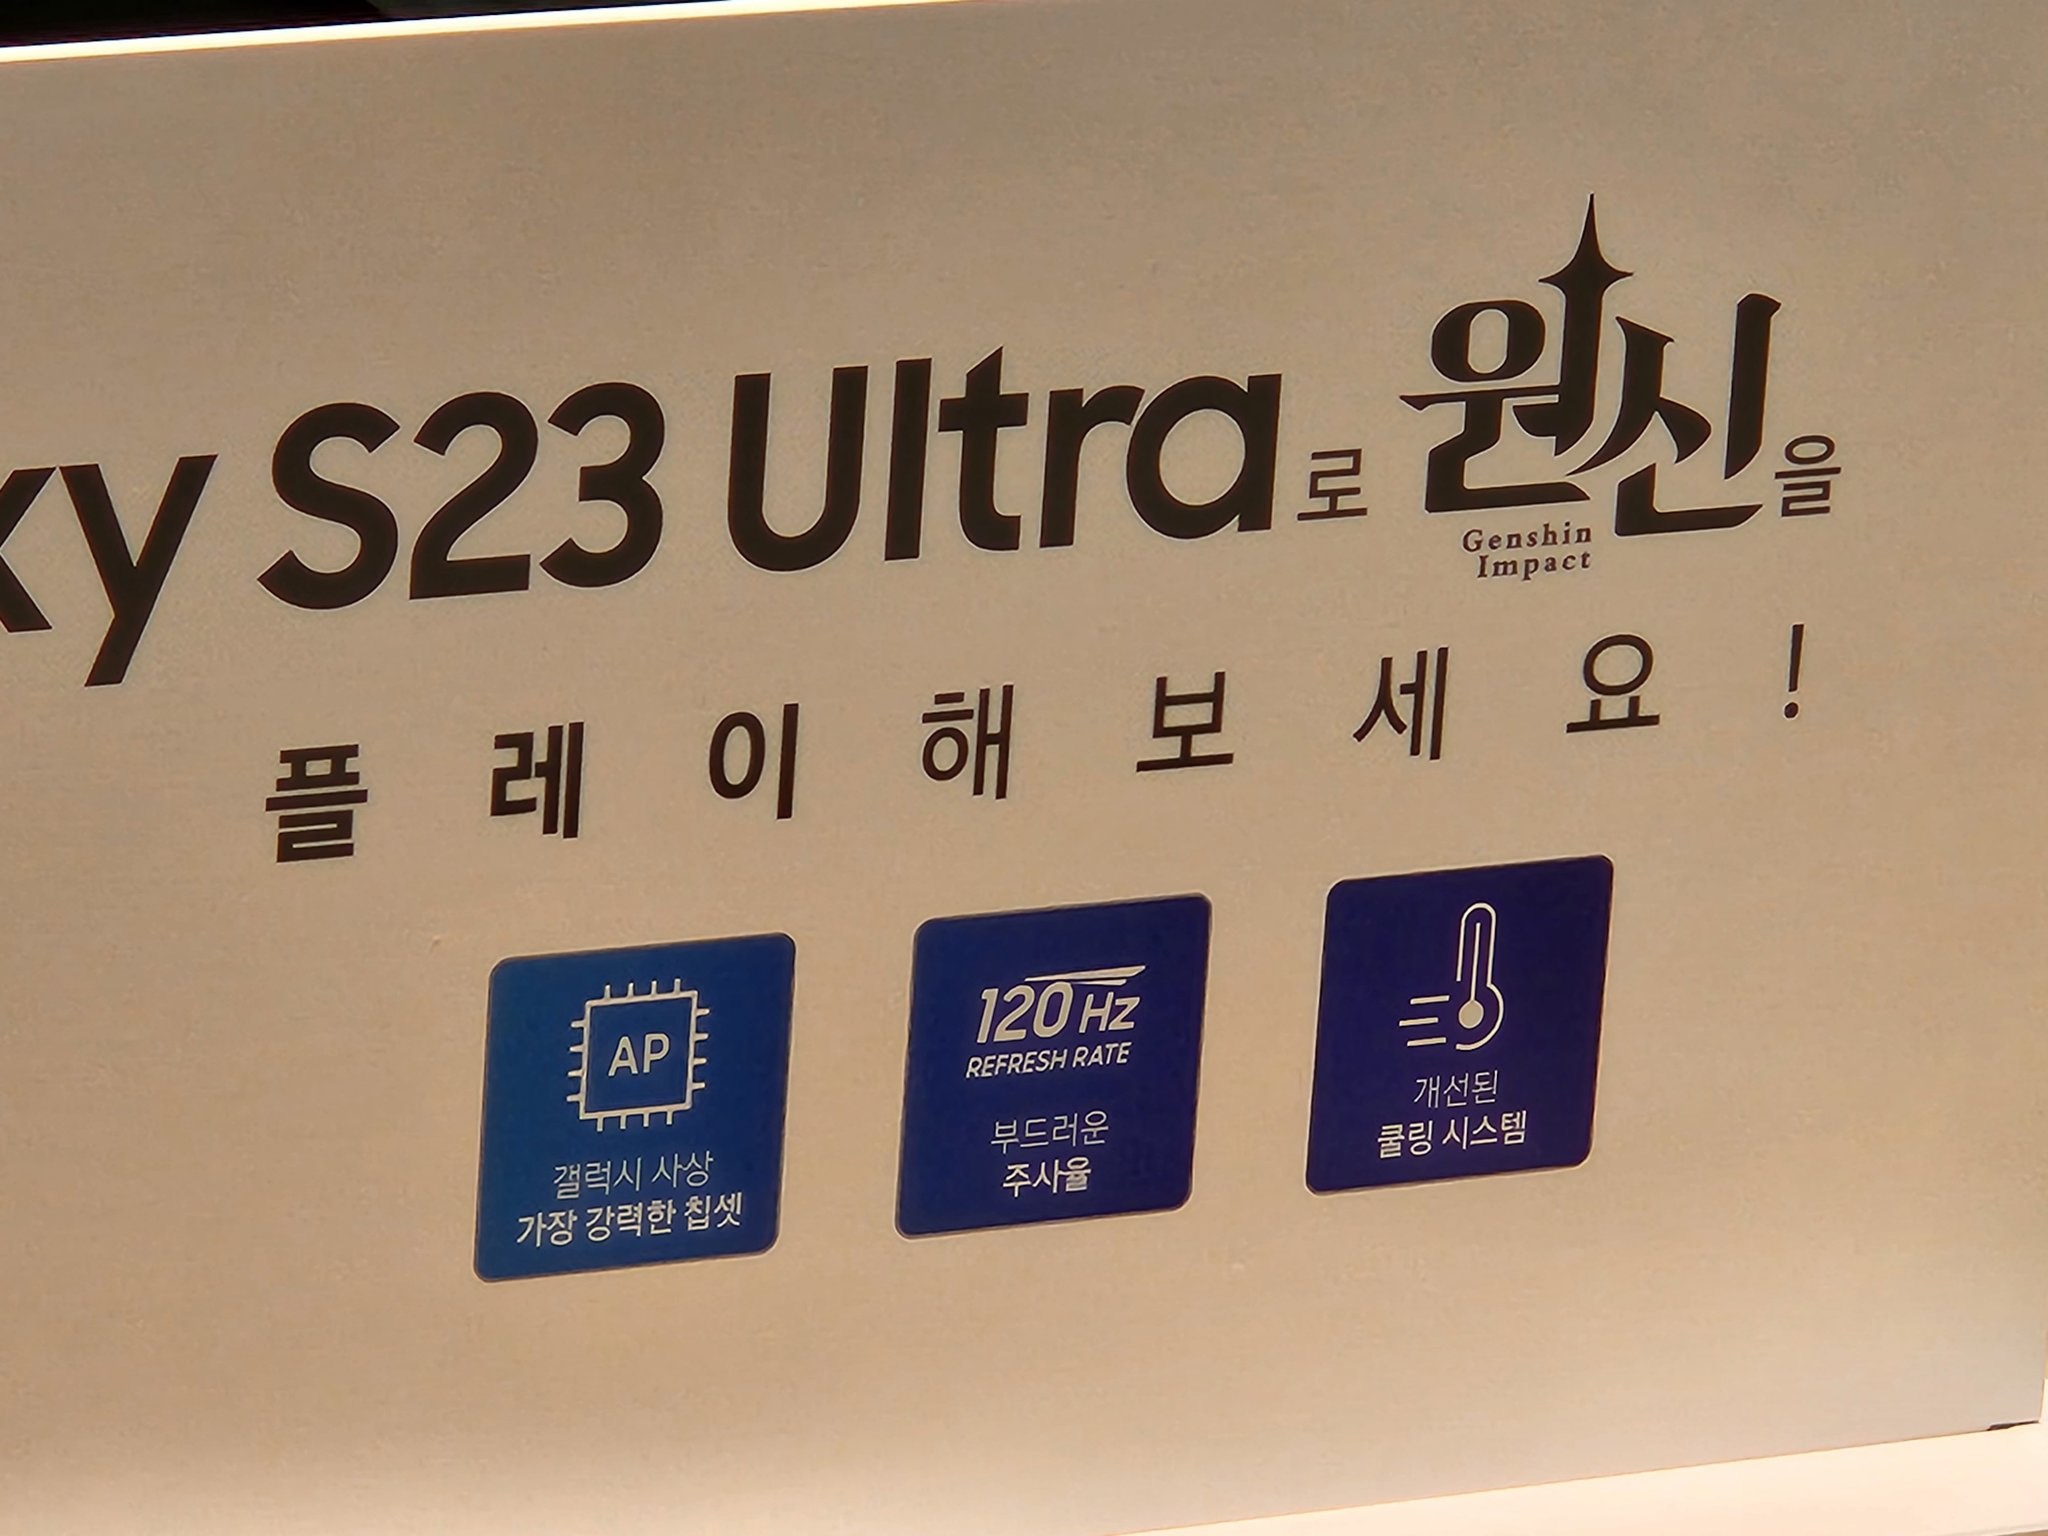 Galaxy S23 Ultra için Genshin Impact 120fps desteğine kavuşacak